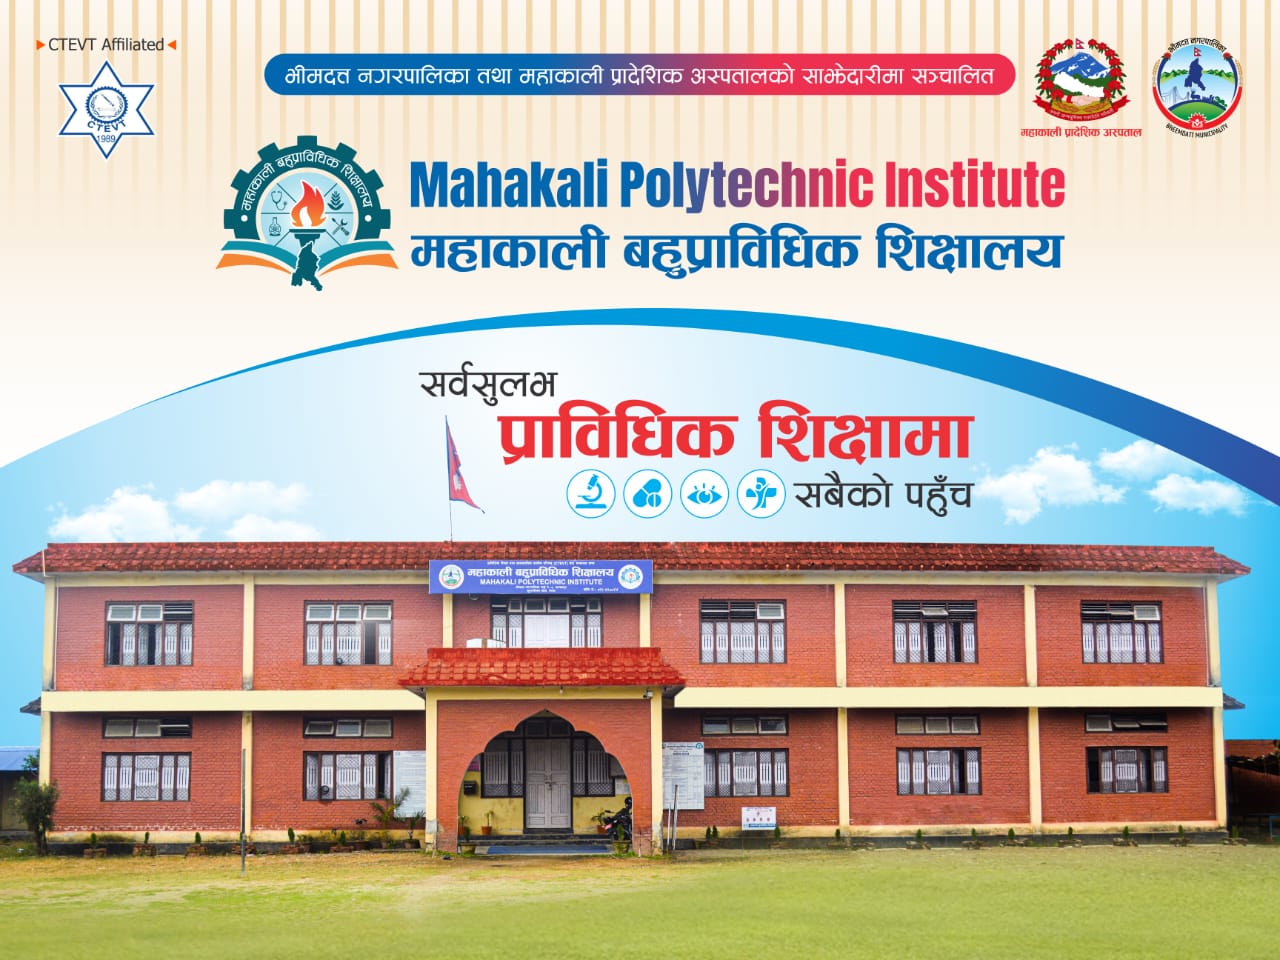 Mahakali Polytechnic